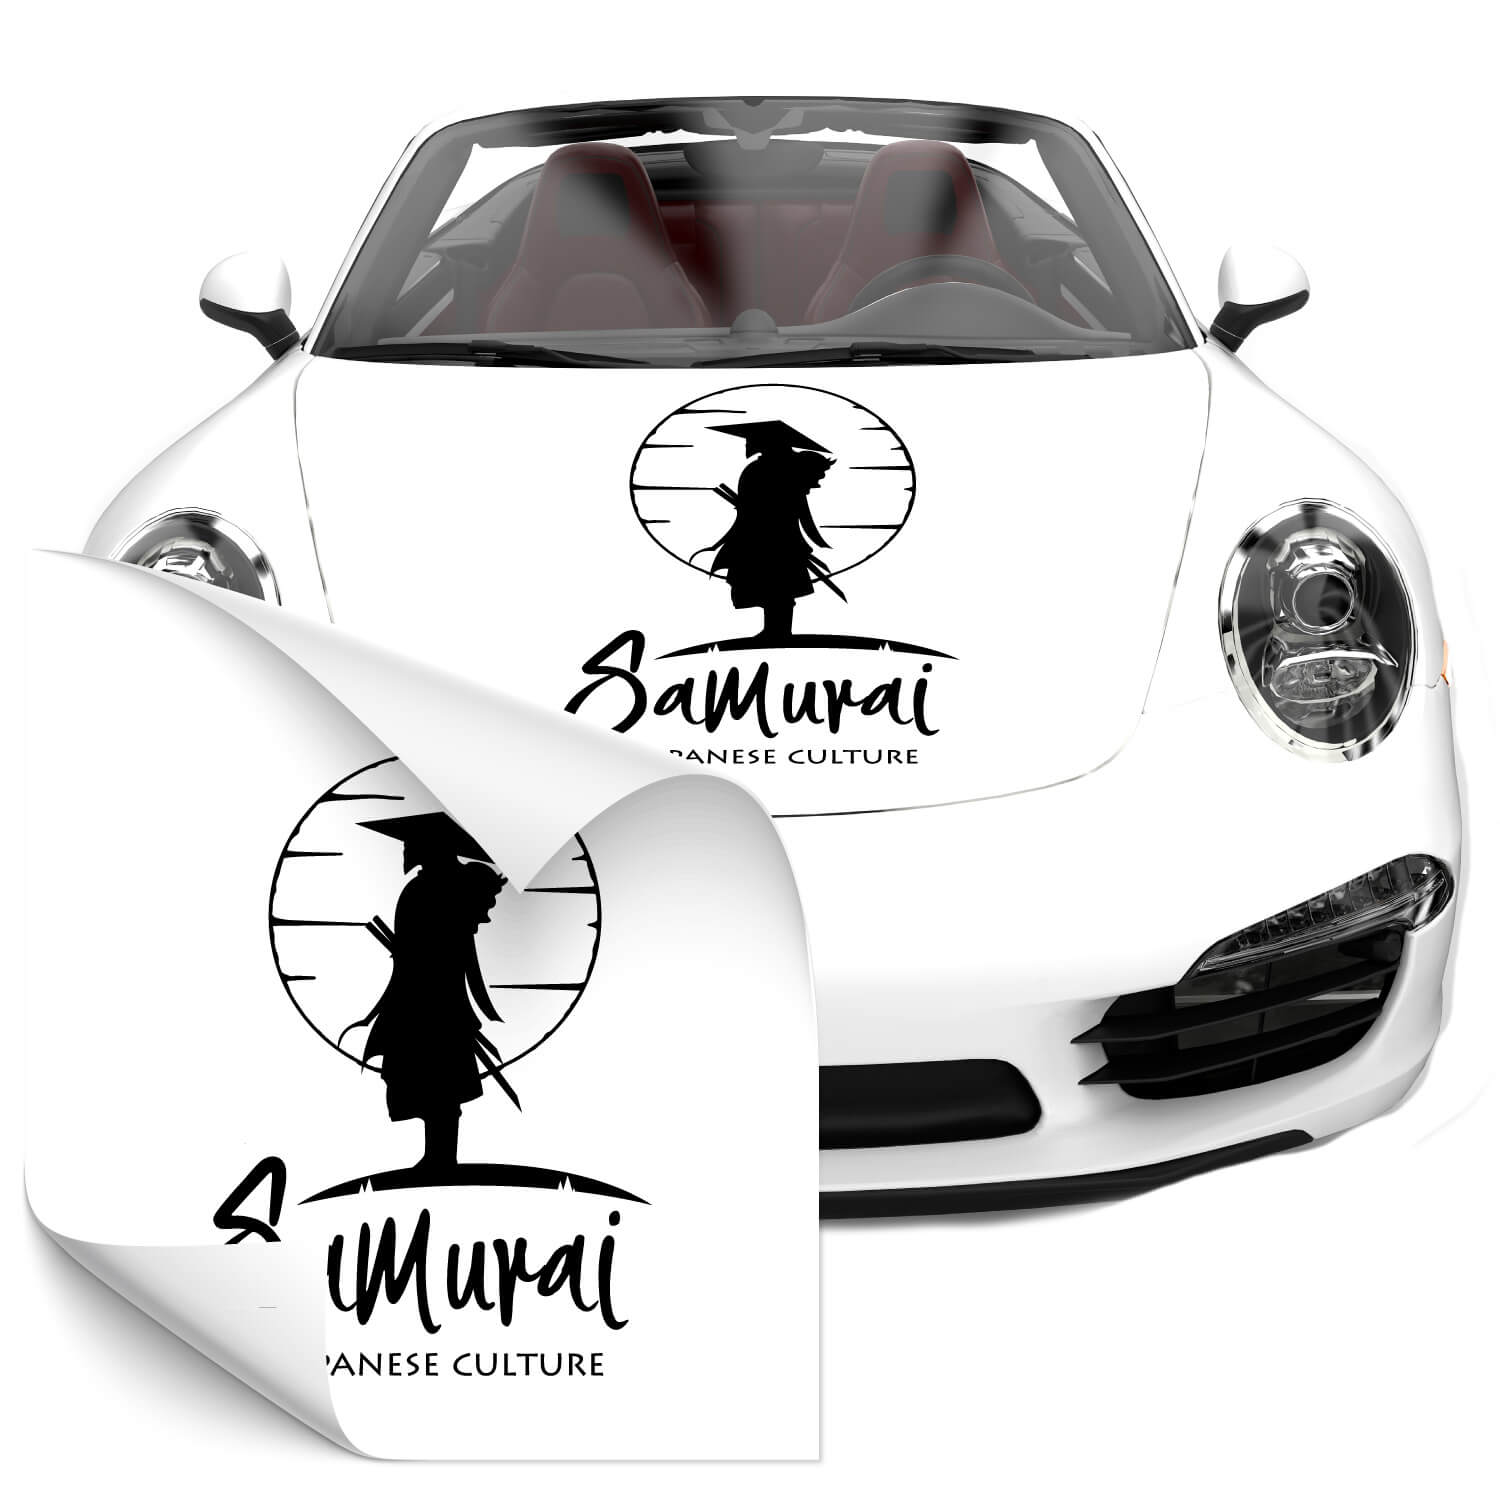 JDM Samurai Aufkleber für Auto, Samurai Seite Auto Aufkleber, coole Auto  Aufkleber, hochwertige universelle Auto Aufkleber beide Seiten, JDM Themen  Aufkleber - .de